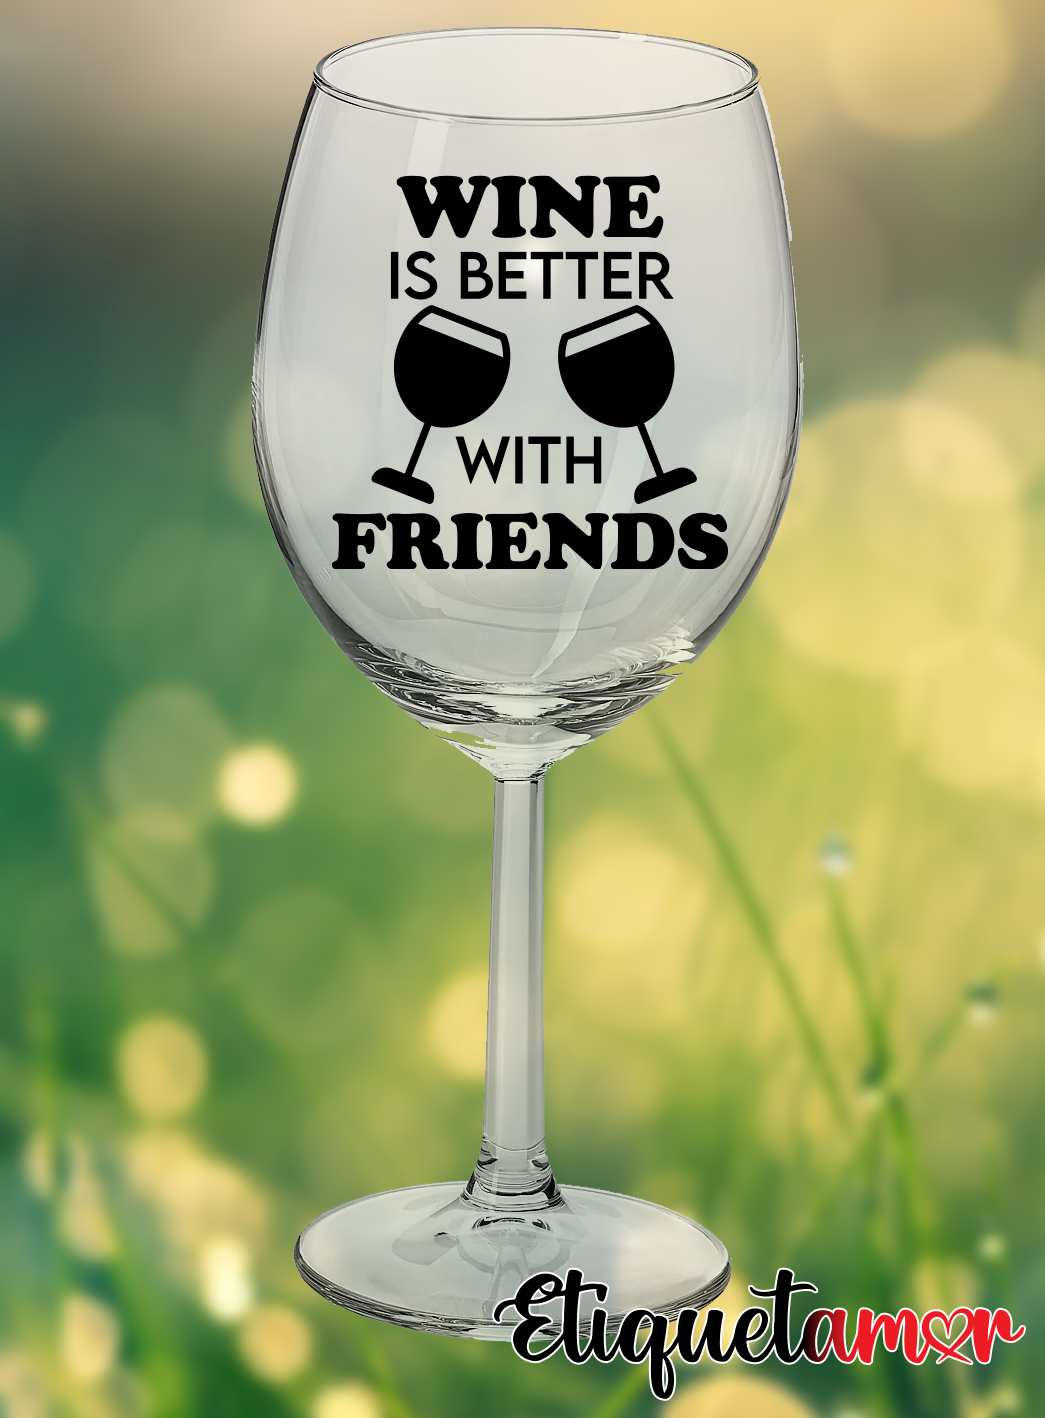 Copa de vino: mejor con amigos